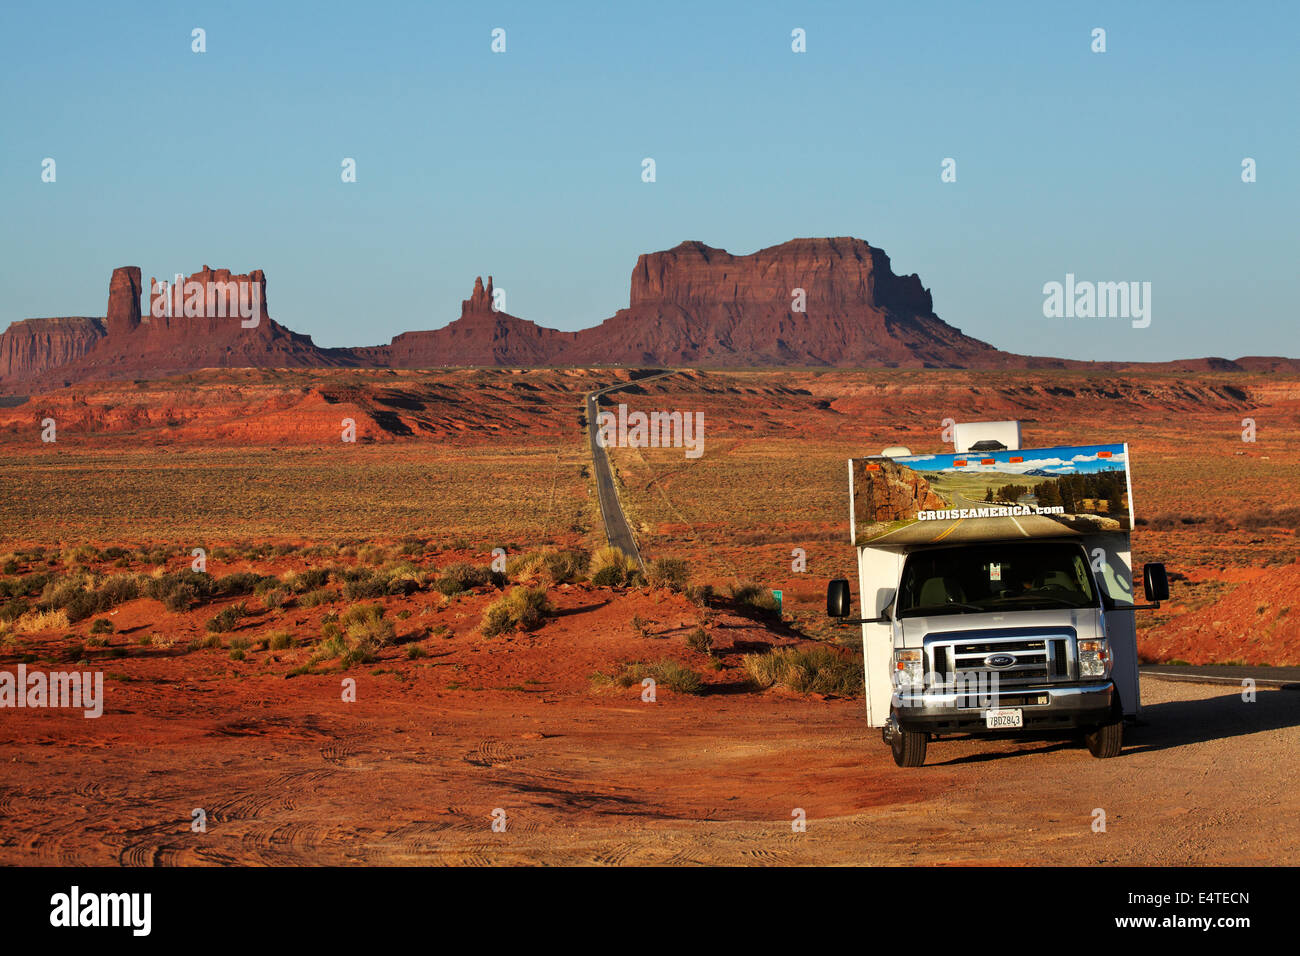 RV neben US Route 163, Monument Valley Navajo Nation, Utah, in der Nähe von Arizona Grenze, USA Stockfoto